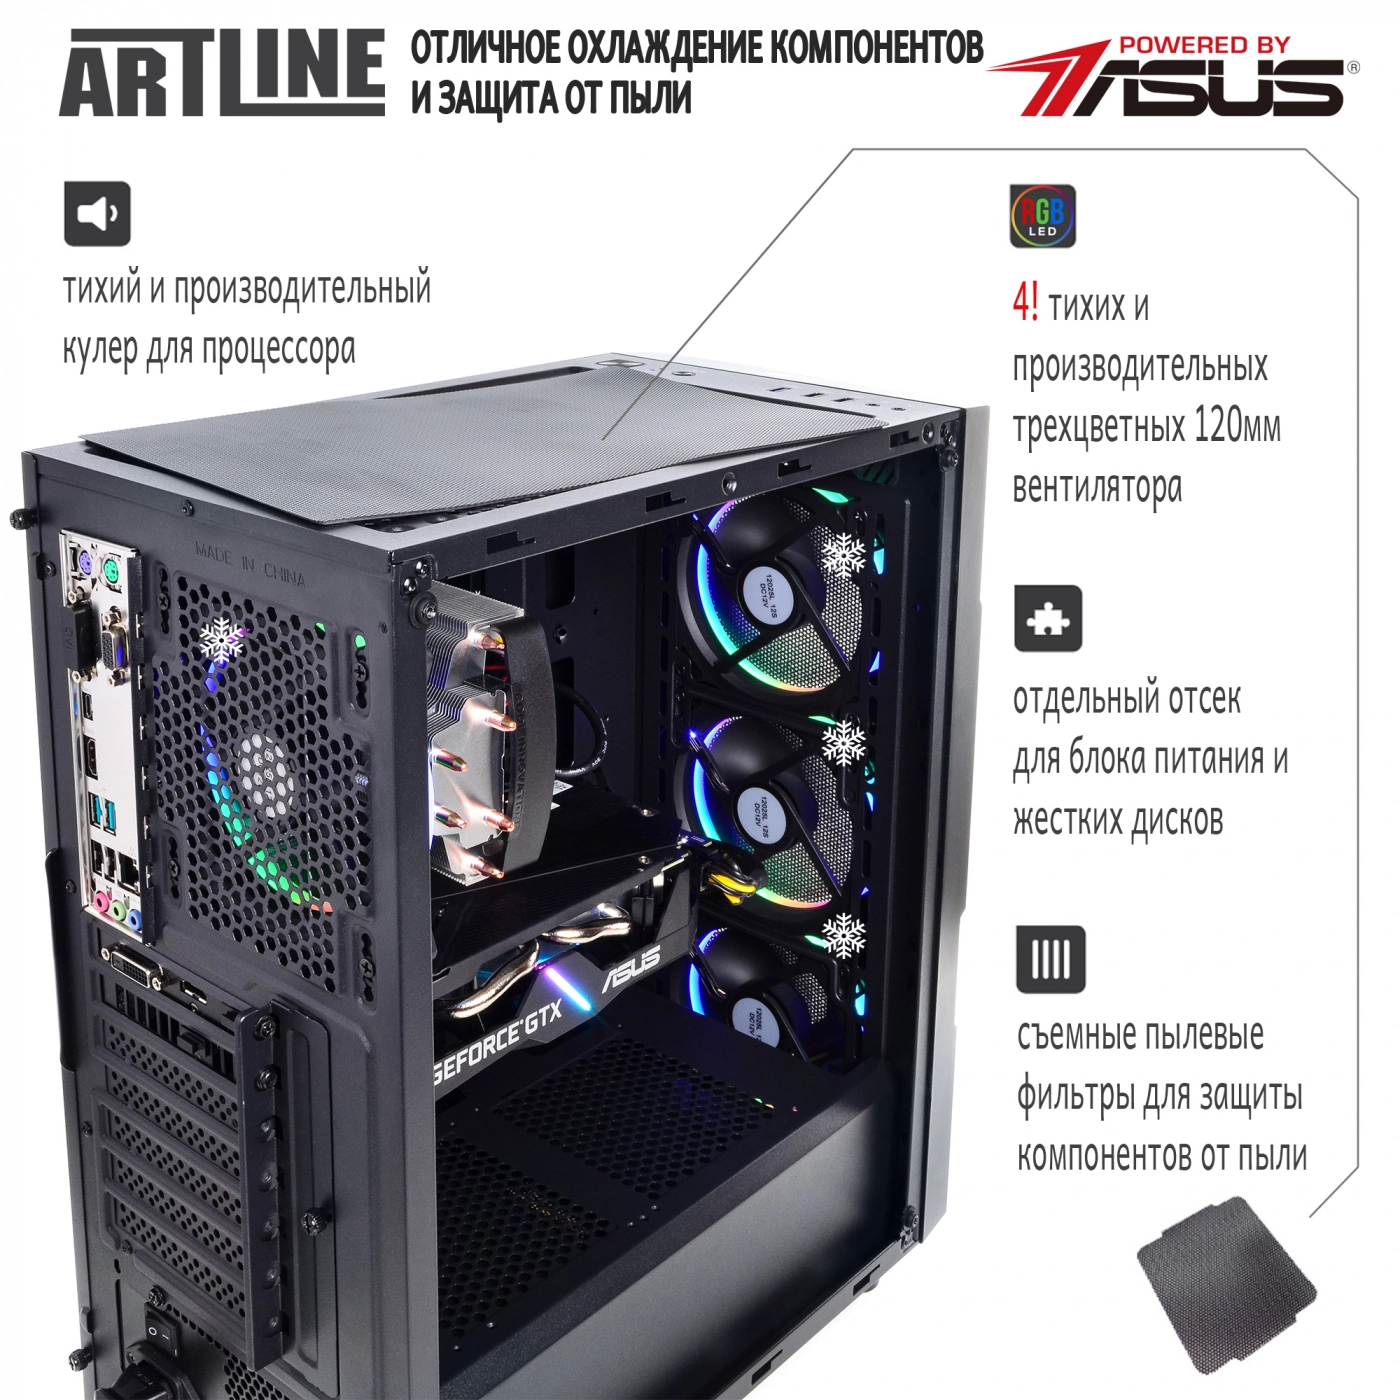 Купить Компьютер ARTLINE Gaming X39v36 - фото 2